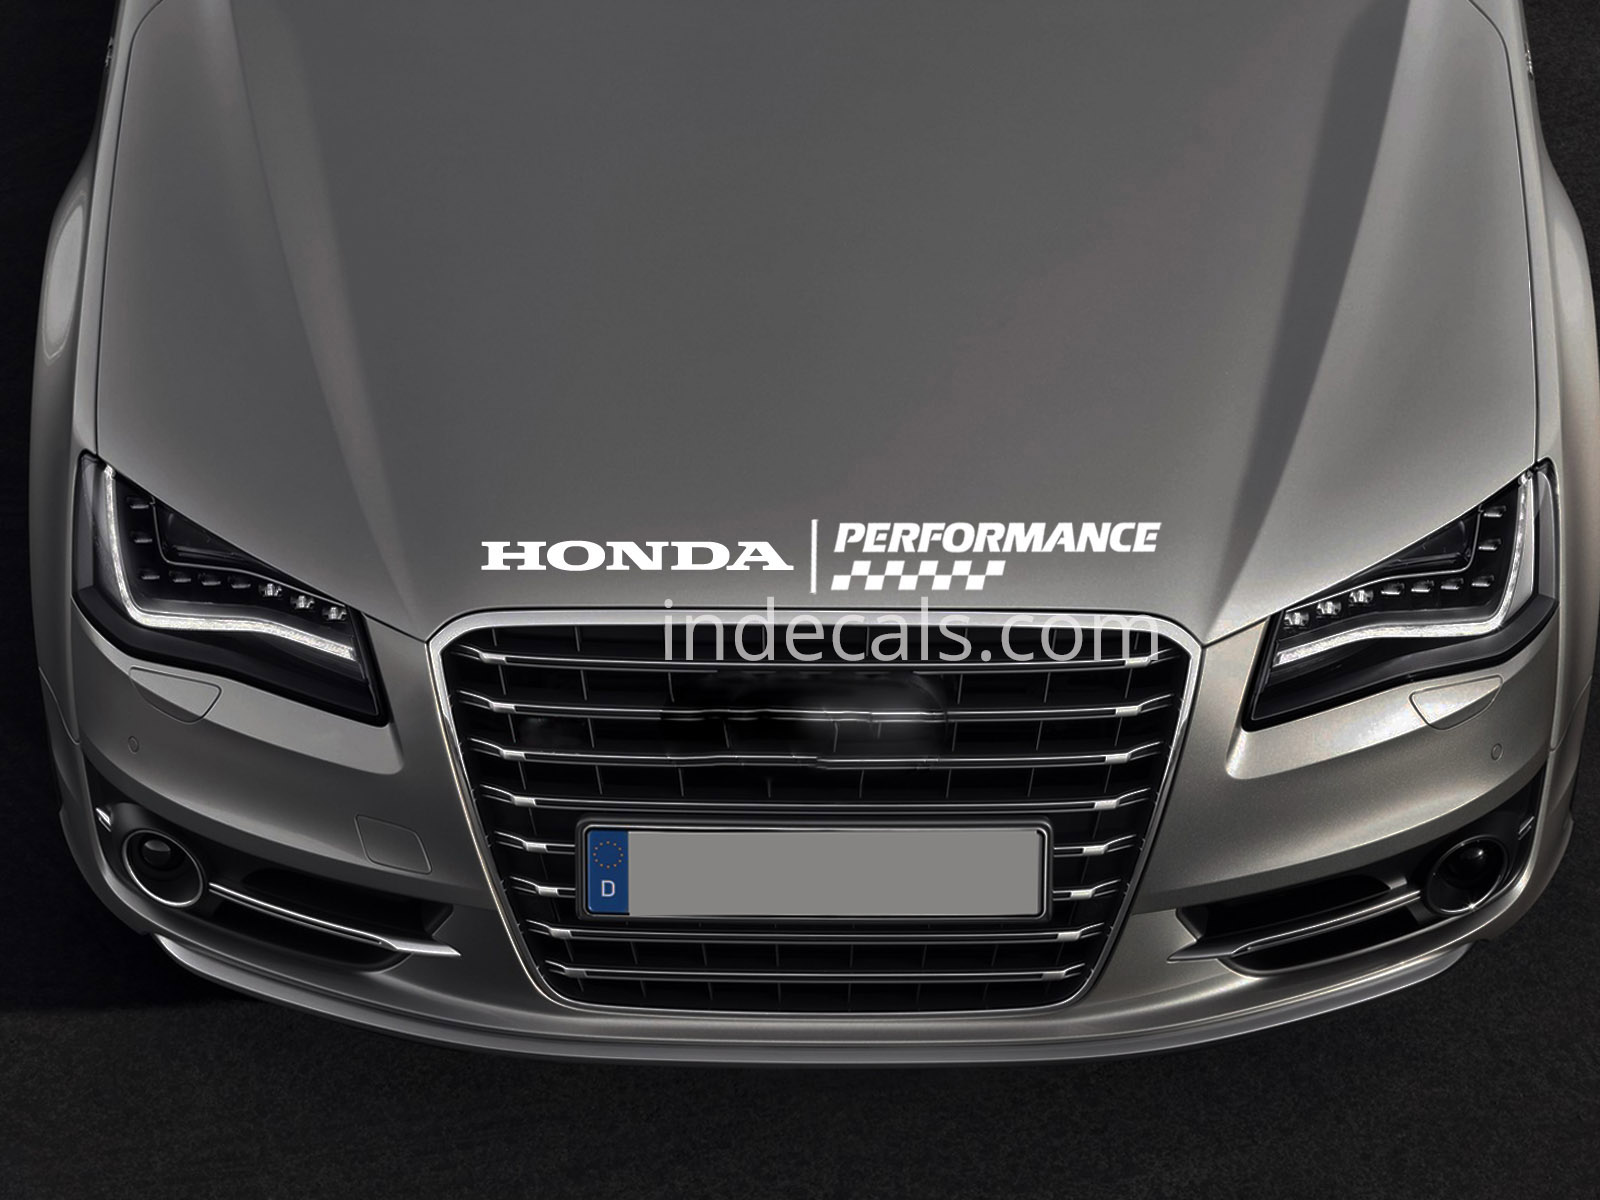 1 x Honda Peformance Sticker for Bonnet - White